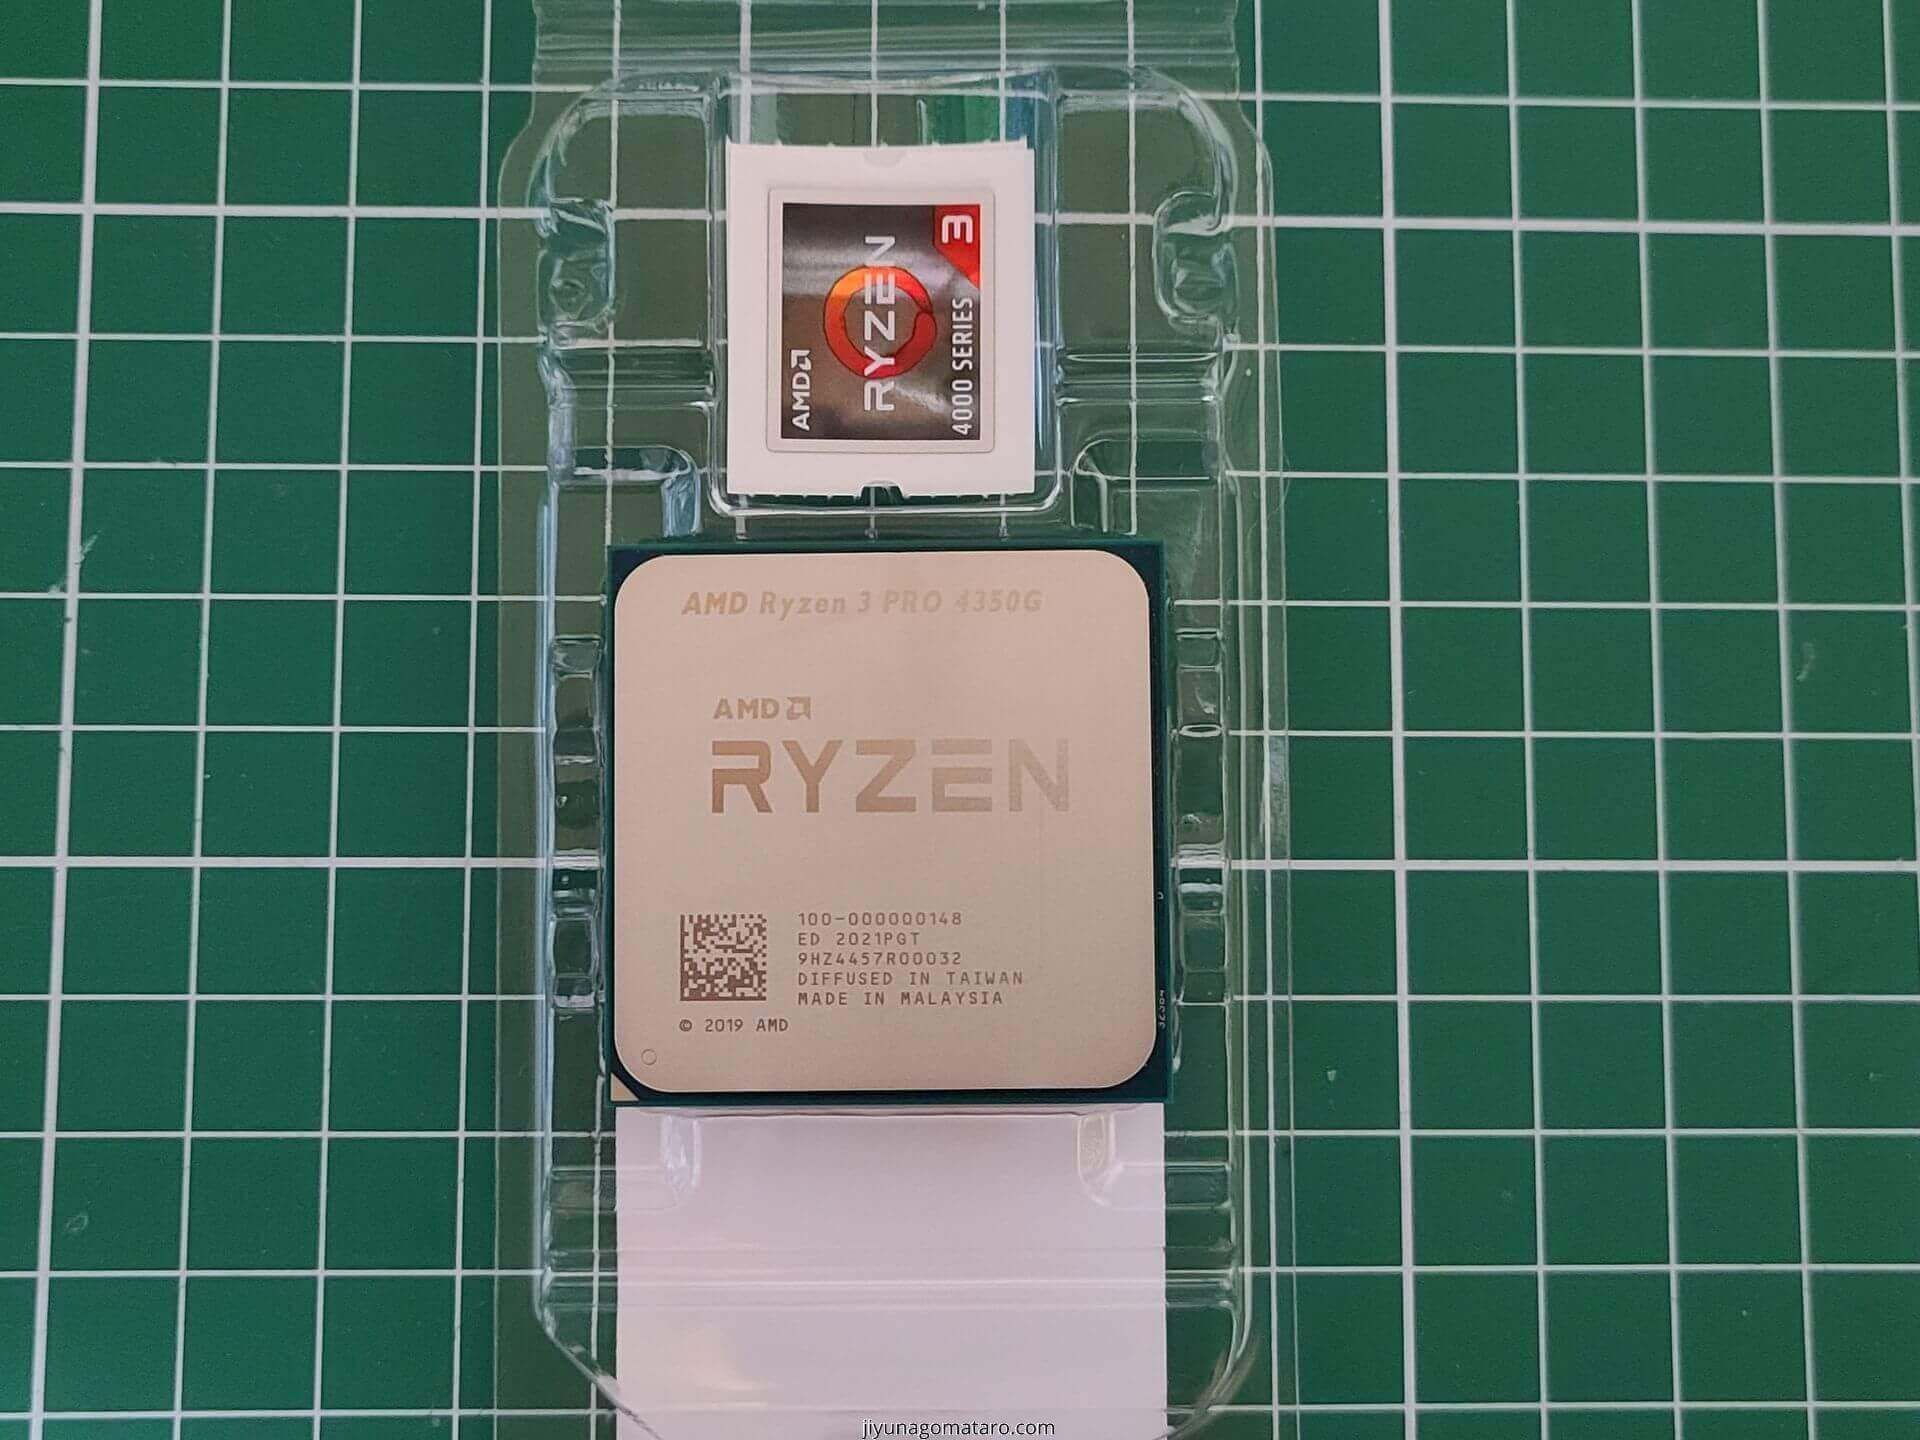 【新品】AMD Ryzen3 PRO 4350G